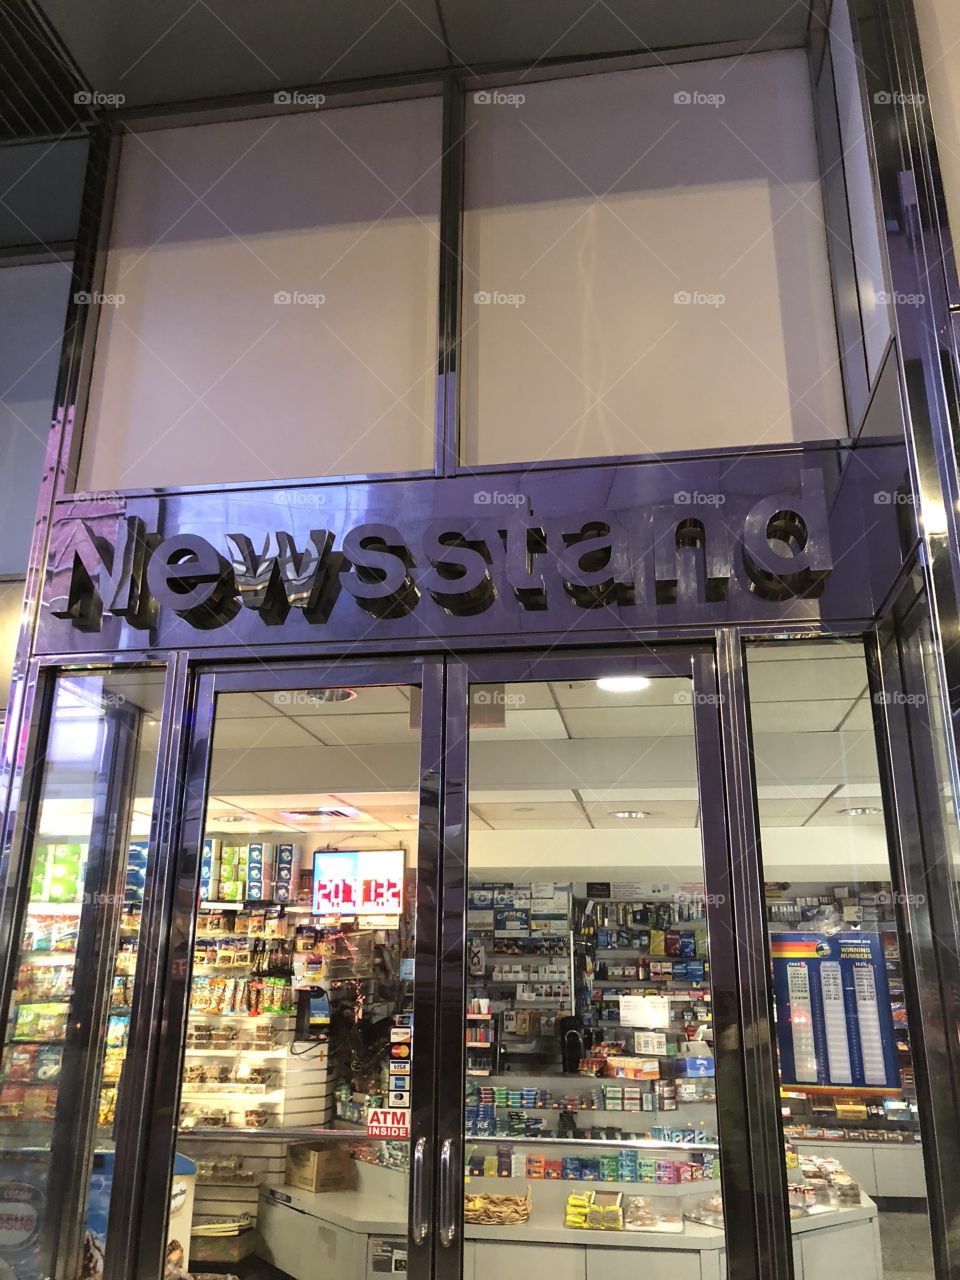 Newsstand 